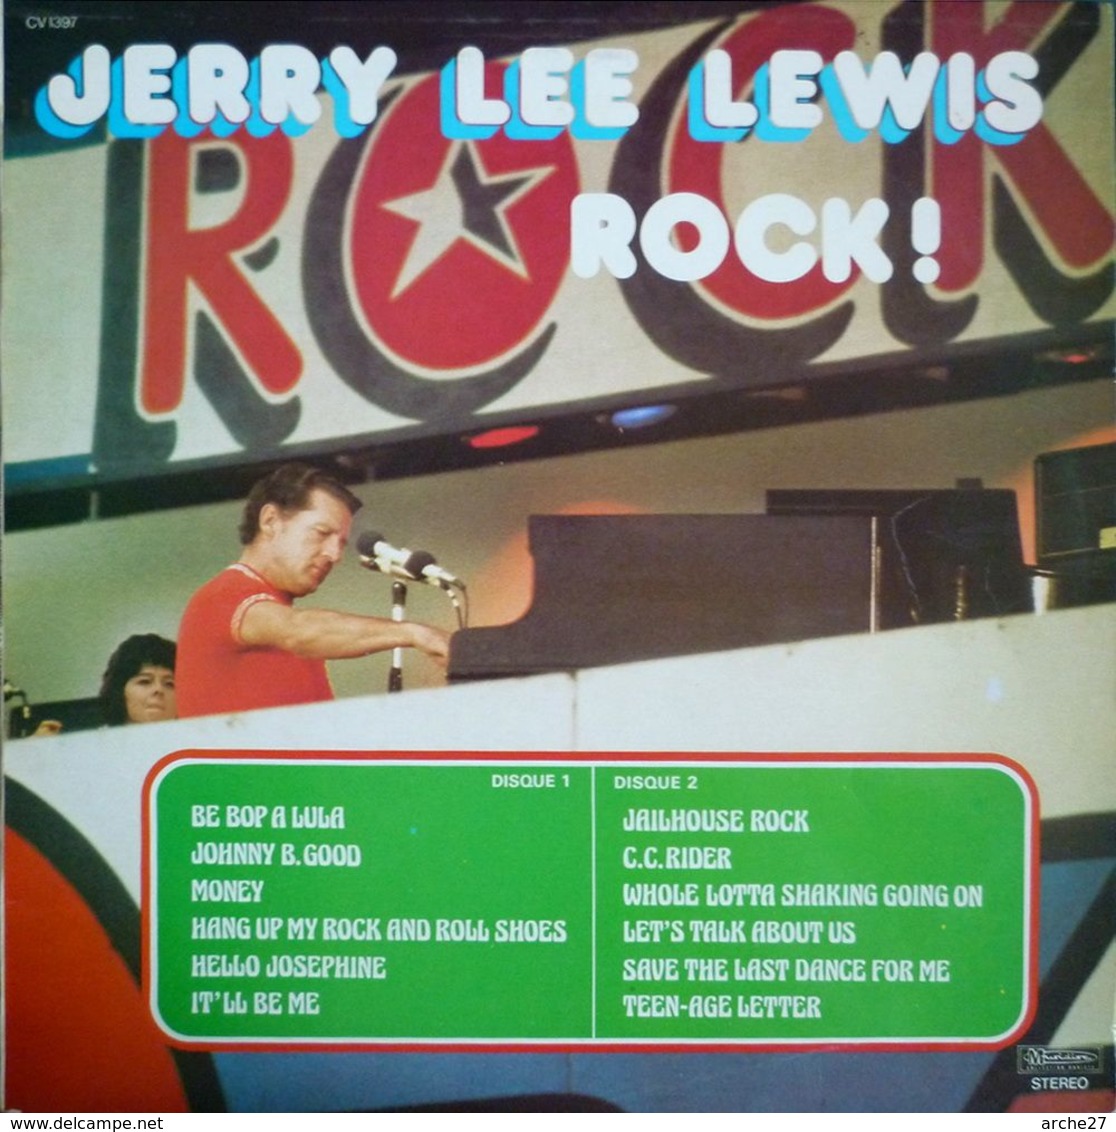 JERRY LEE LEWIS - LP - 33T - Disque Vinyle - Rock - 30 CV 1397 - Rock